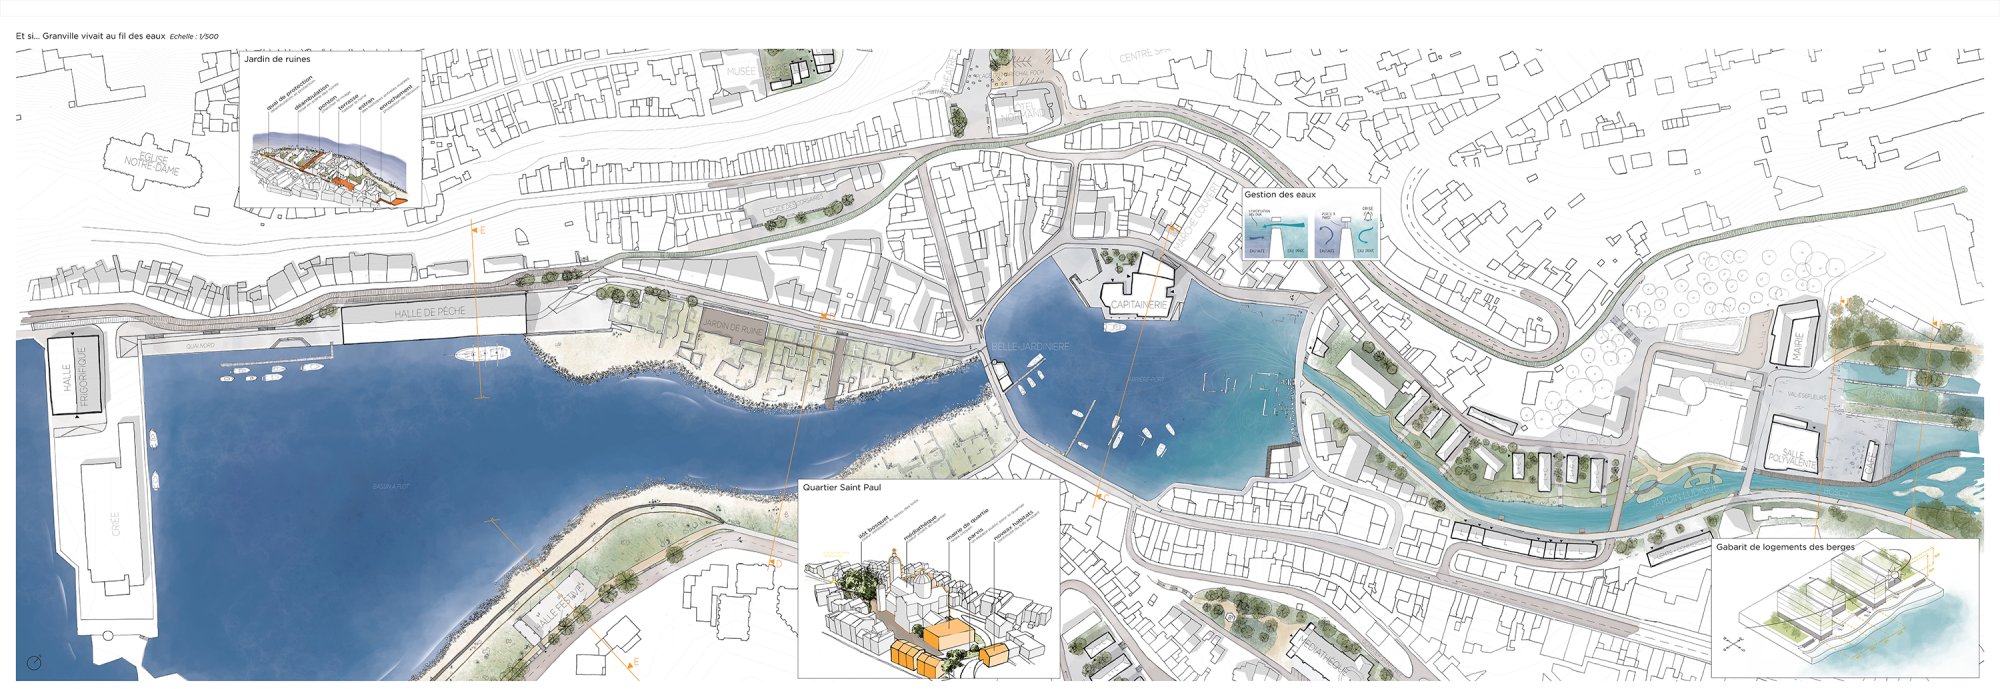 Habiter le littoral changeant - Anticiper une réorganisation urbaine conciliante de Granville - 16